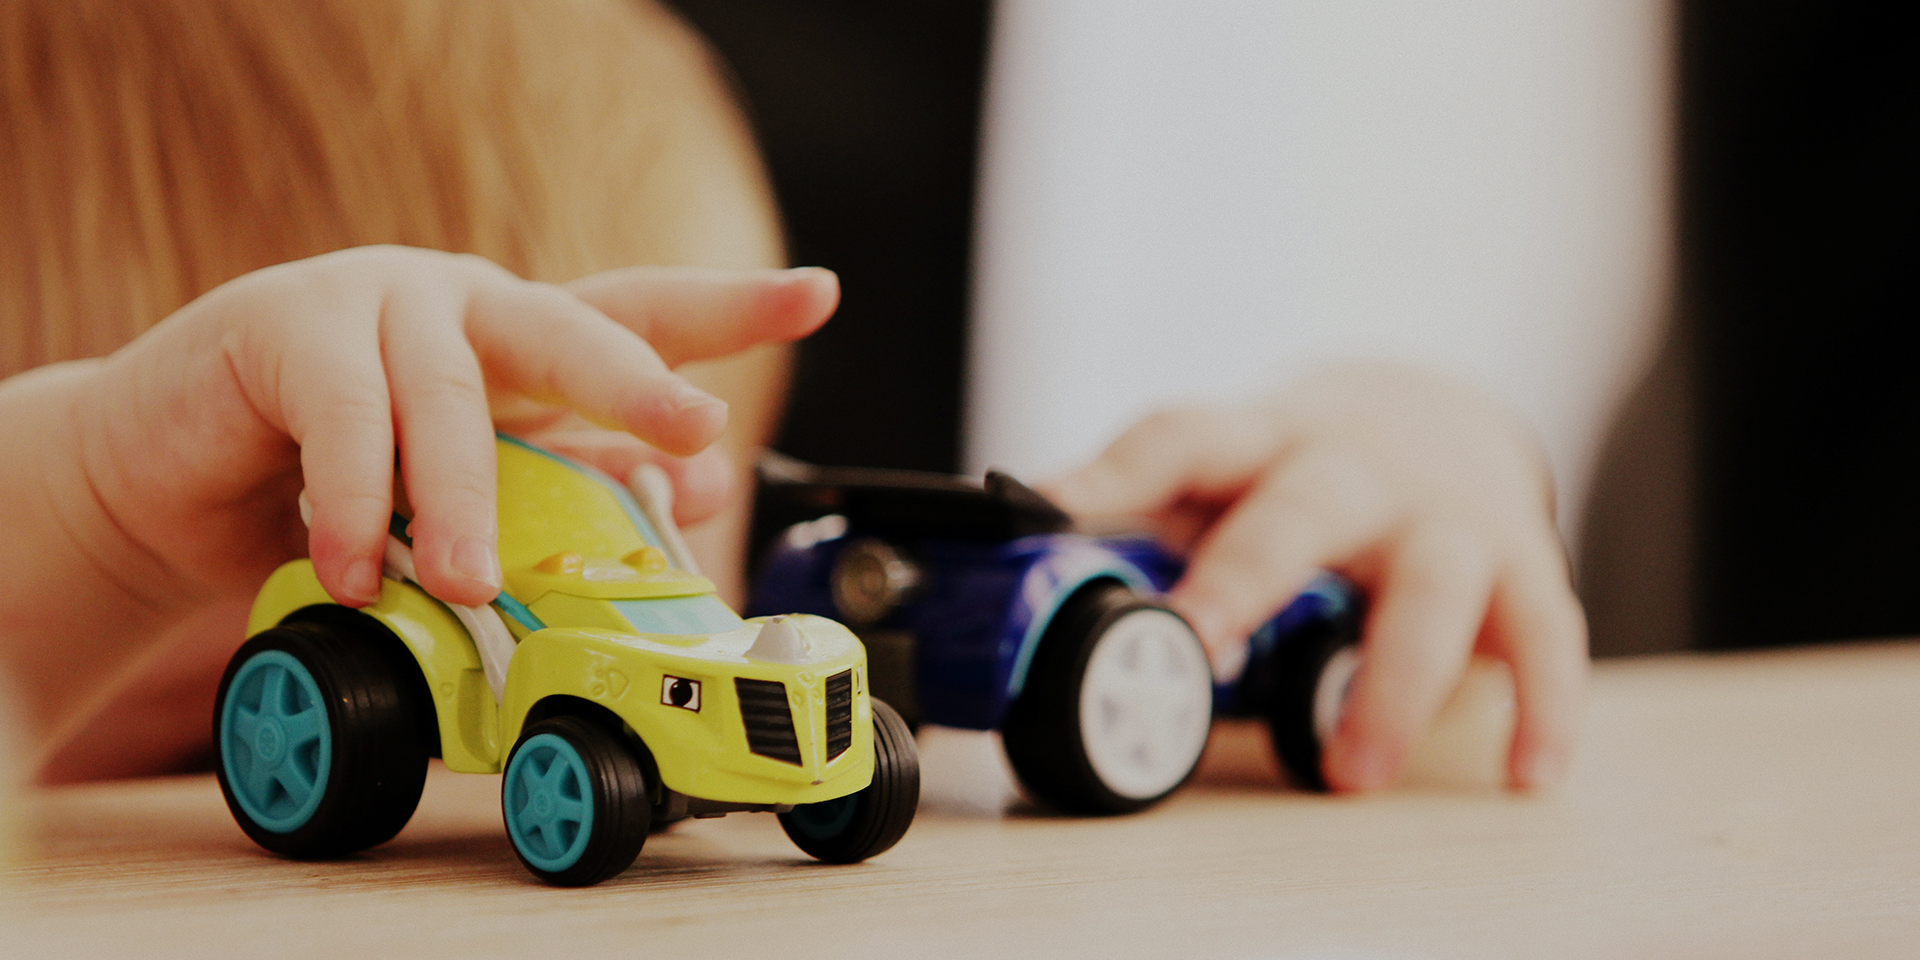 Zdjęcie służy jako tło do cytatu na sliderze głównym. Na zdjęciu dłonie kilkuletniego dziecka bawiącego się dwoma samochodzikami - zabawkami, żółtym i granatowym.